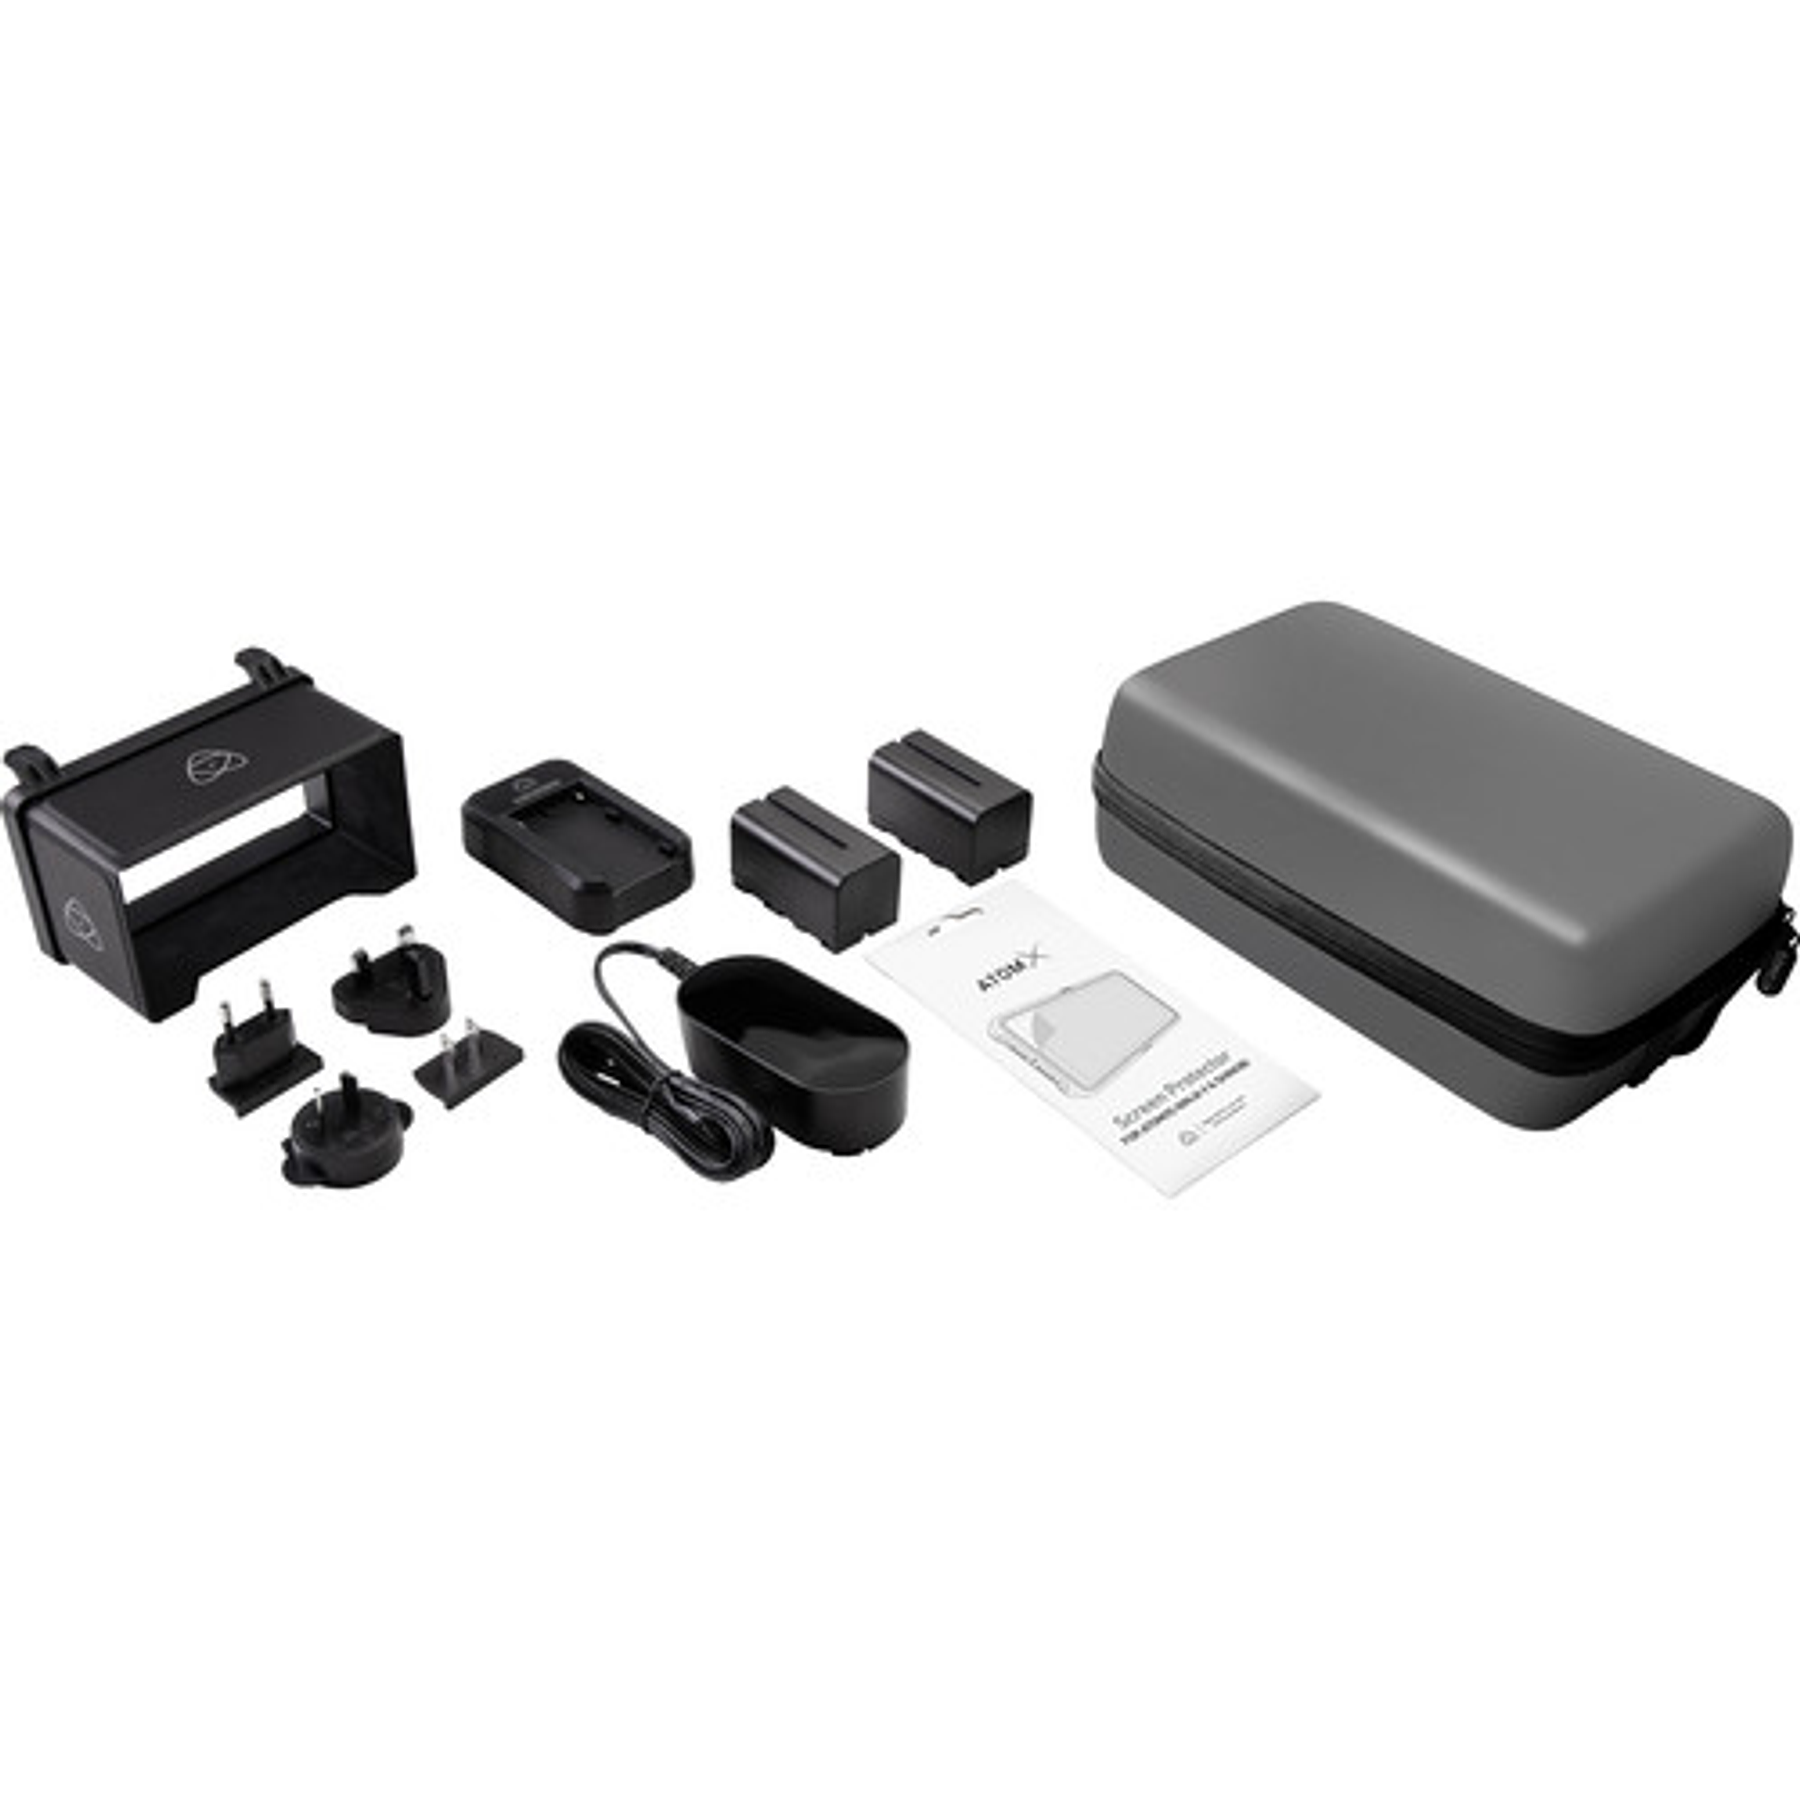 Monitor HDMI Atomos Shinobi de 5,2' 4K con kit de accesorios de 5'